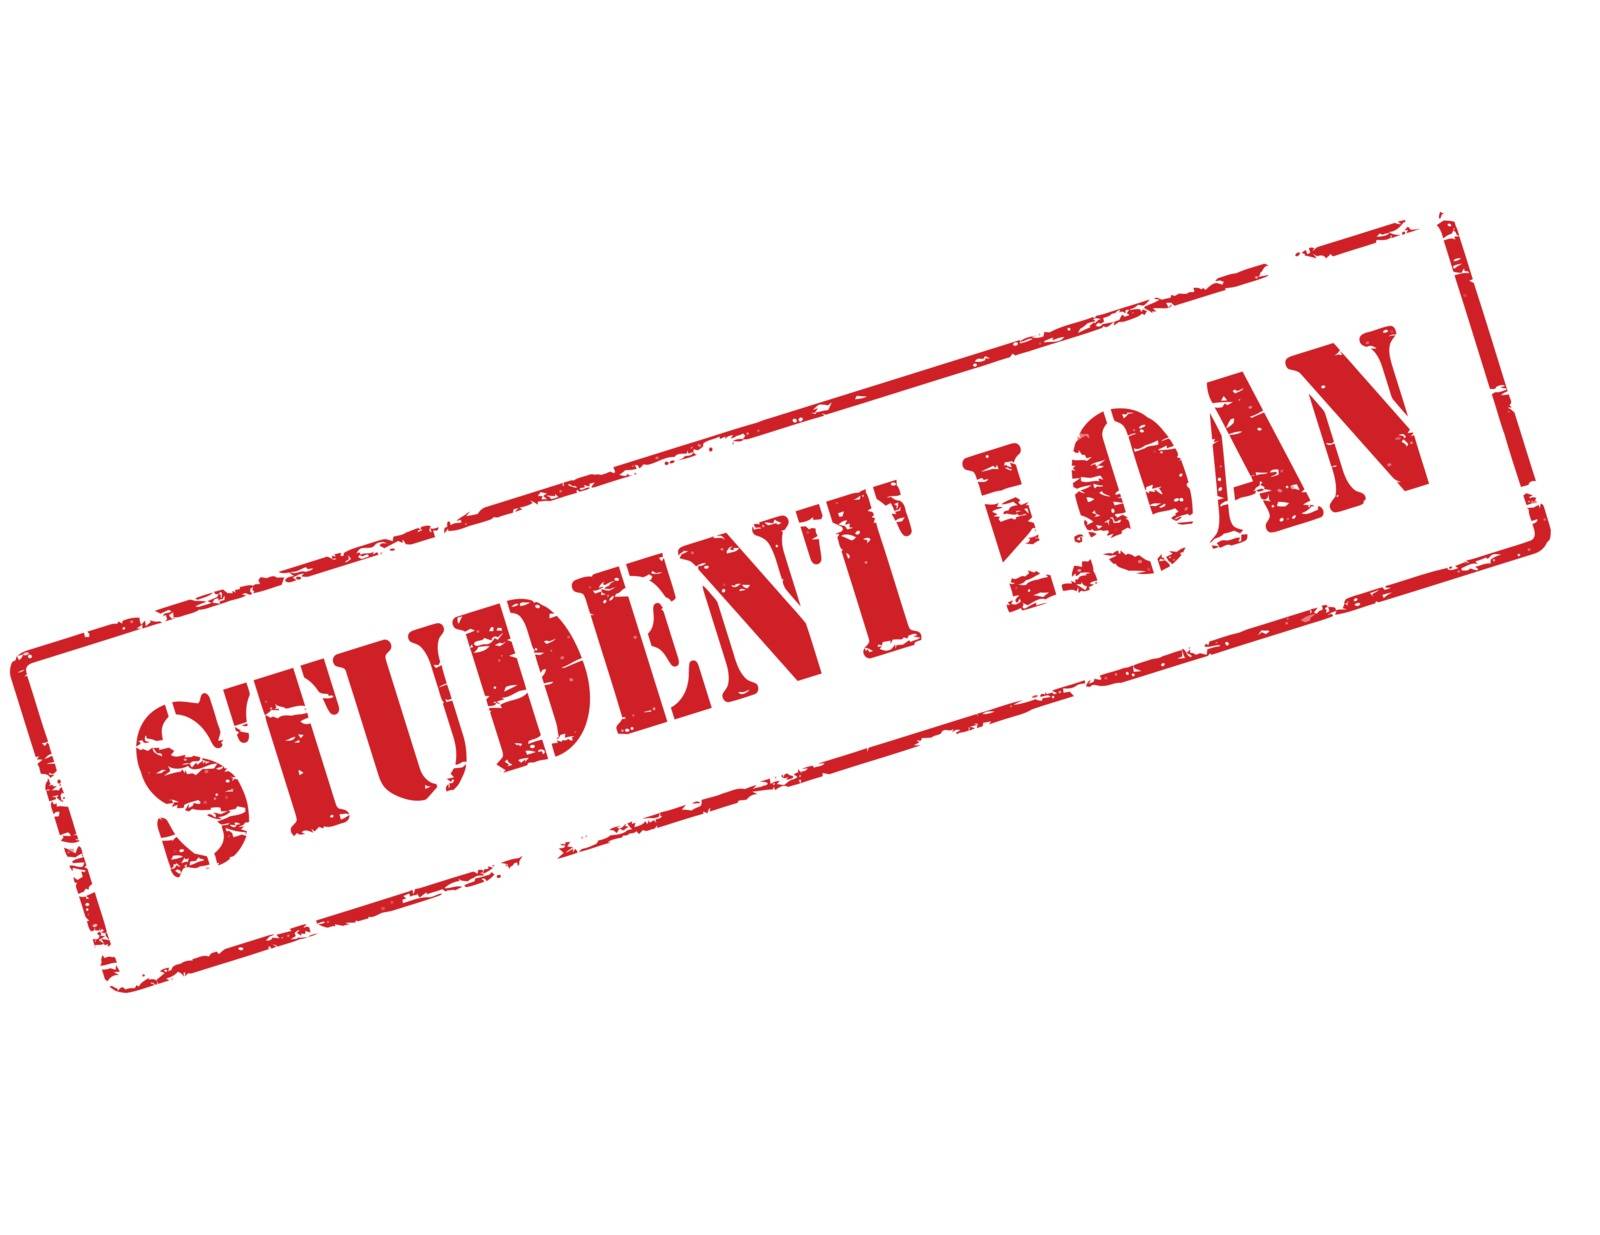 Student loan by carmenbobo